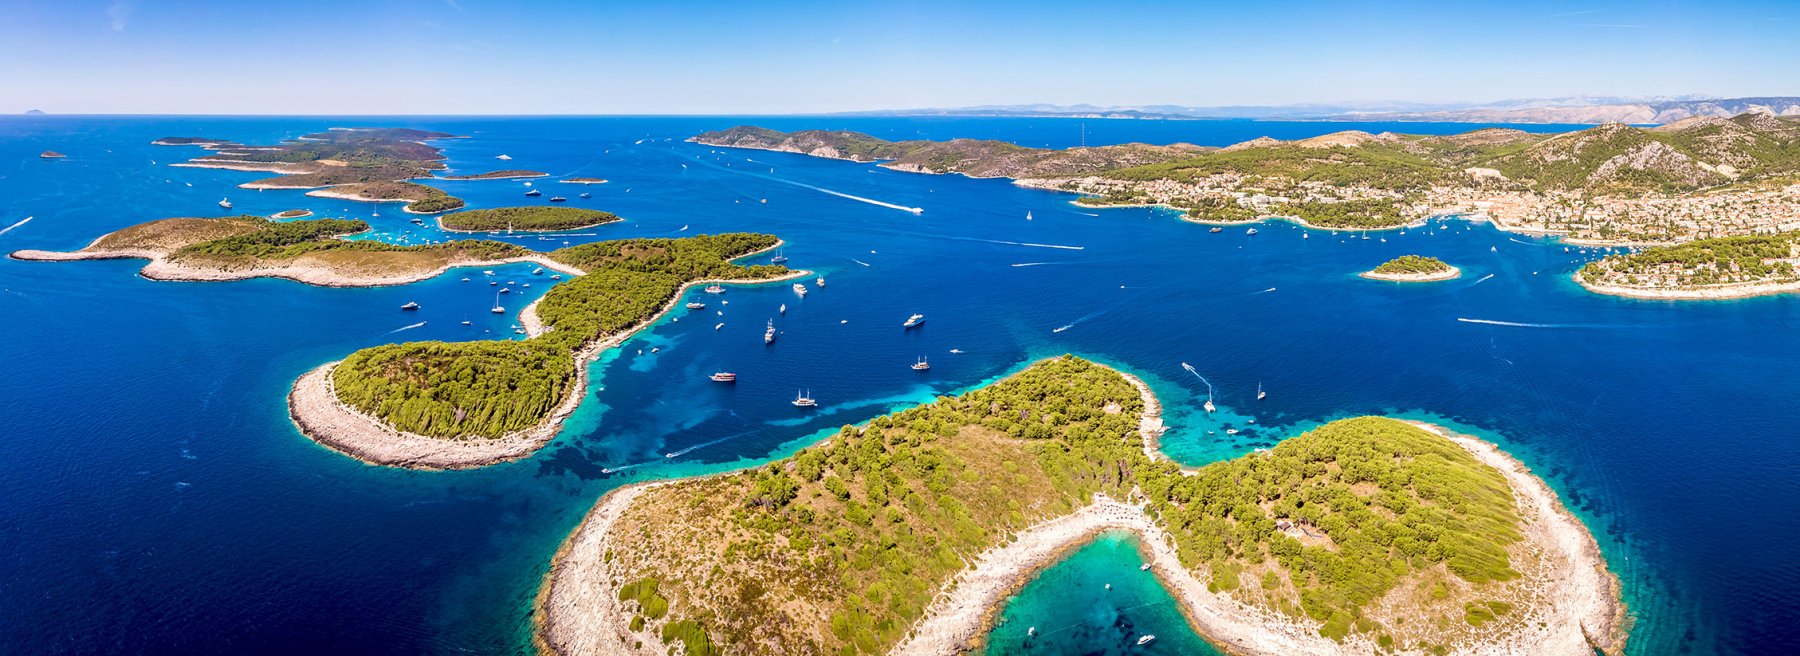 Ferienhäuser für 12 Personen in Kroatien